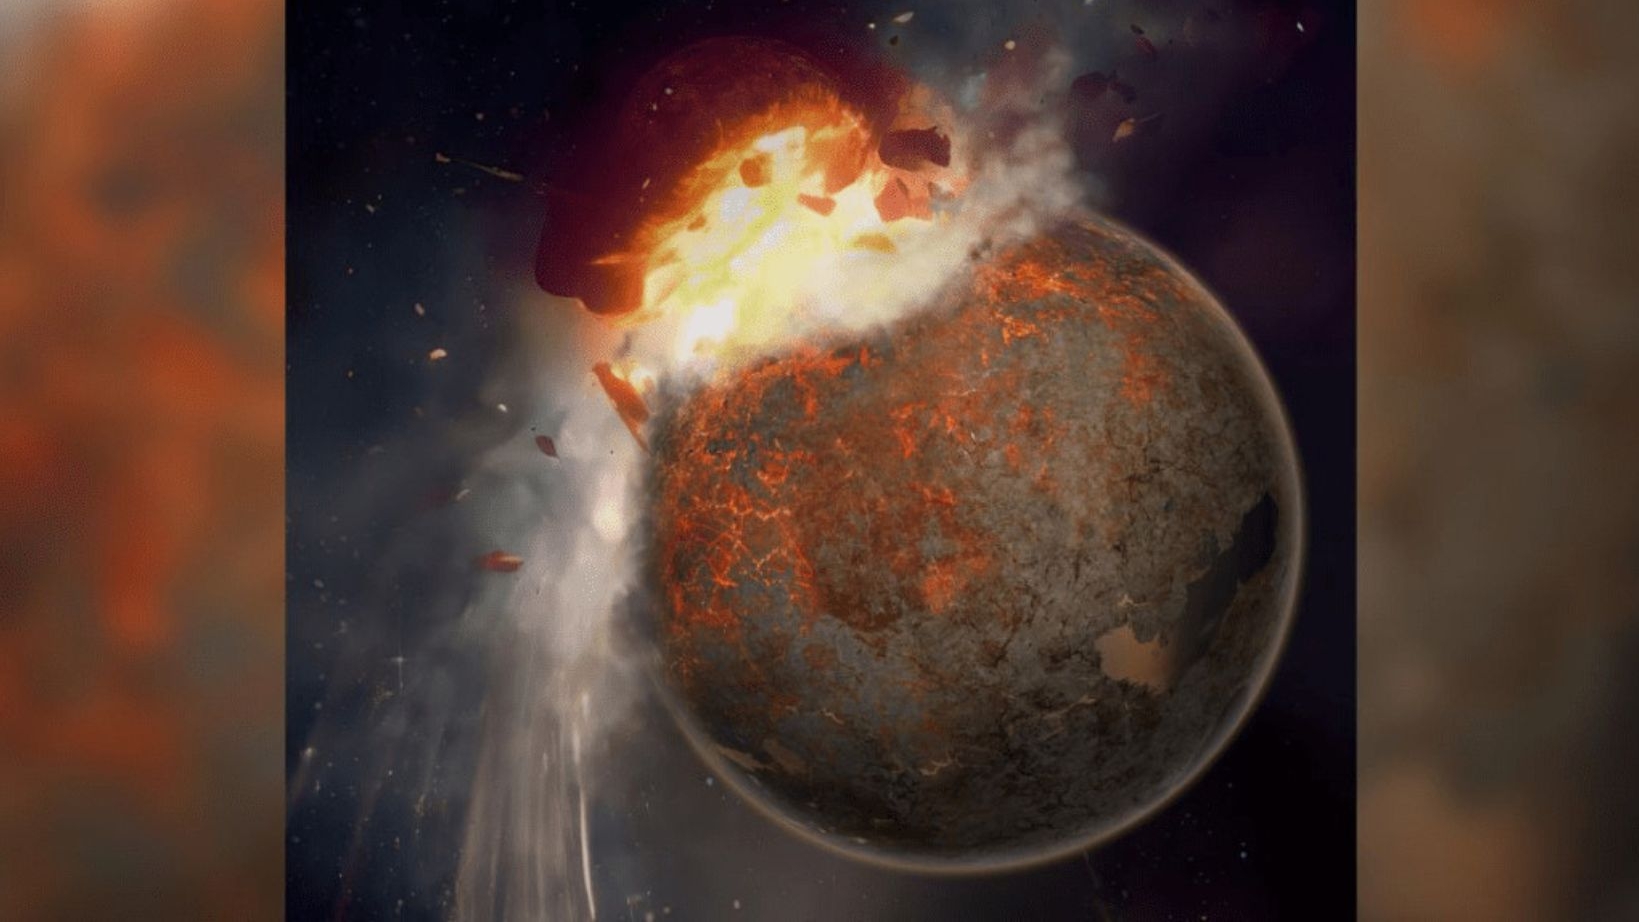 Cientistas afirmam terem encontrado restos de planeta que colidiu com a terra Lorena Bueri